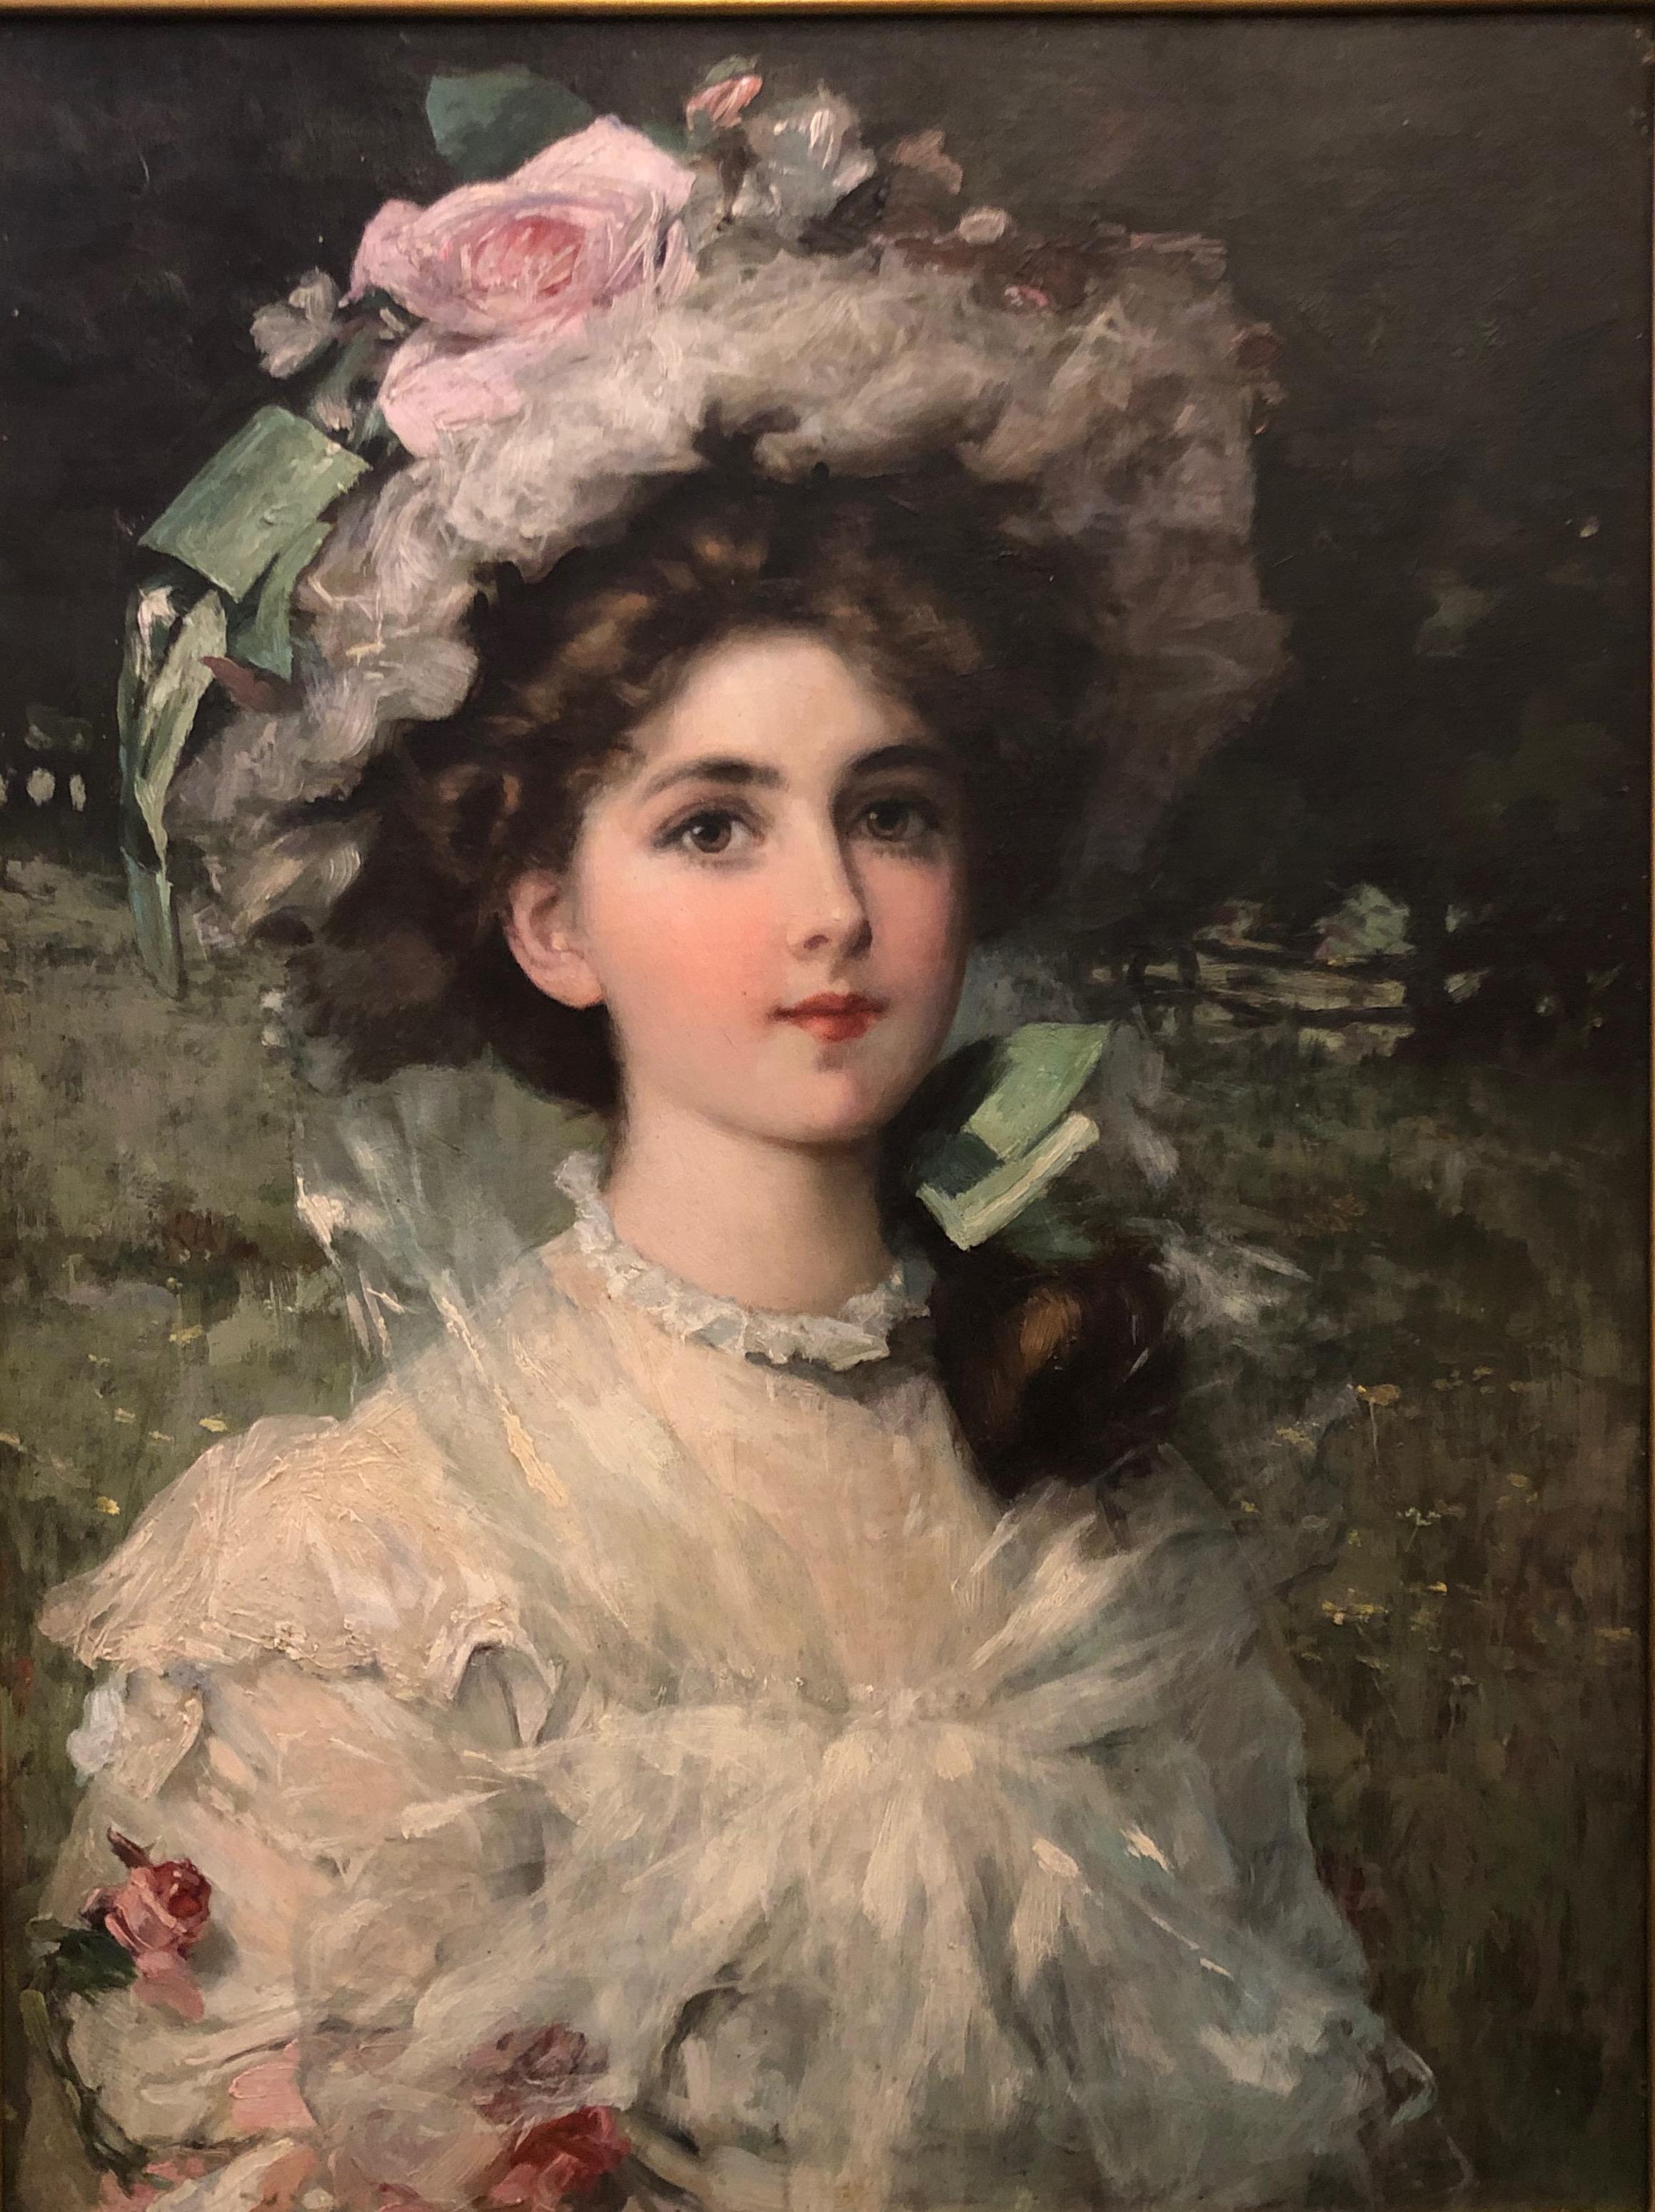 Die junge Dame in der Landschaft – Painting von William H. McEntee